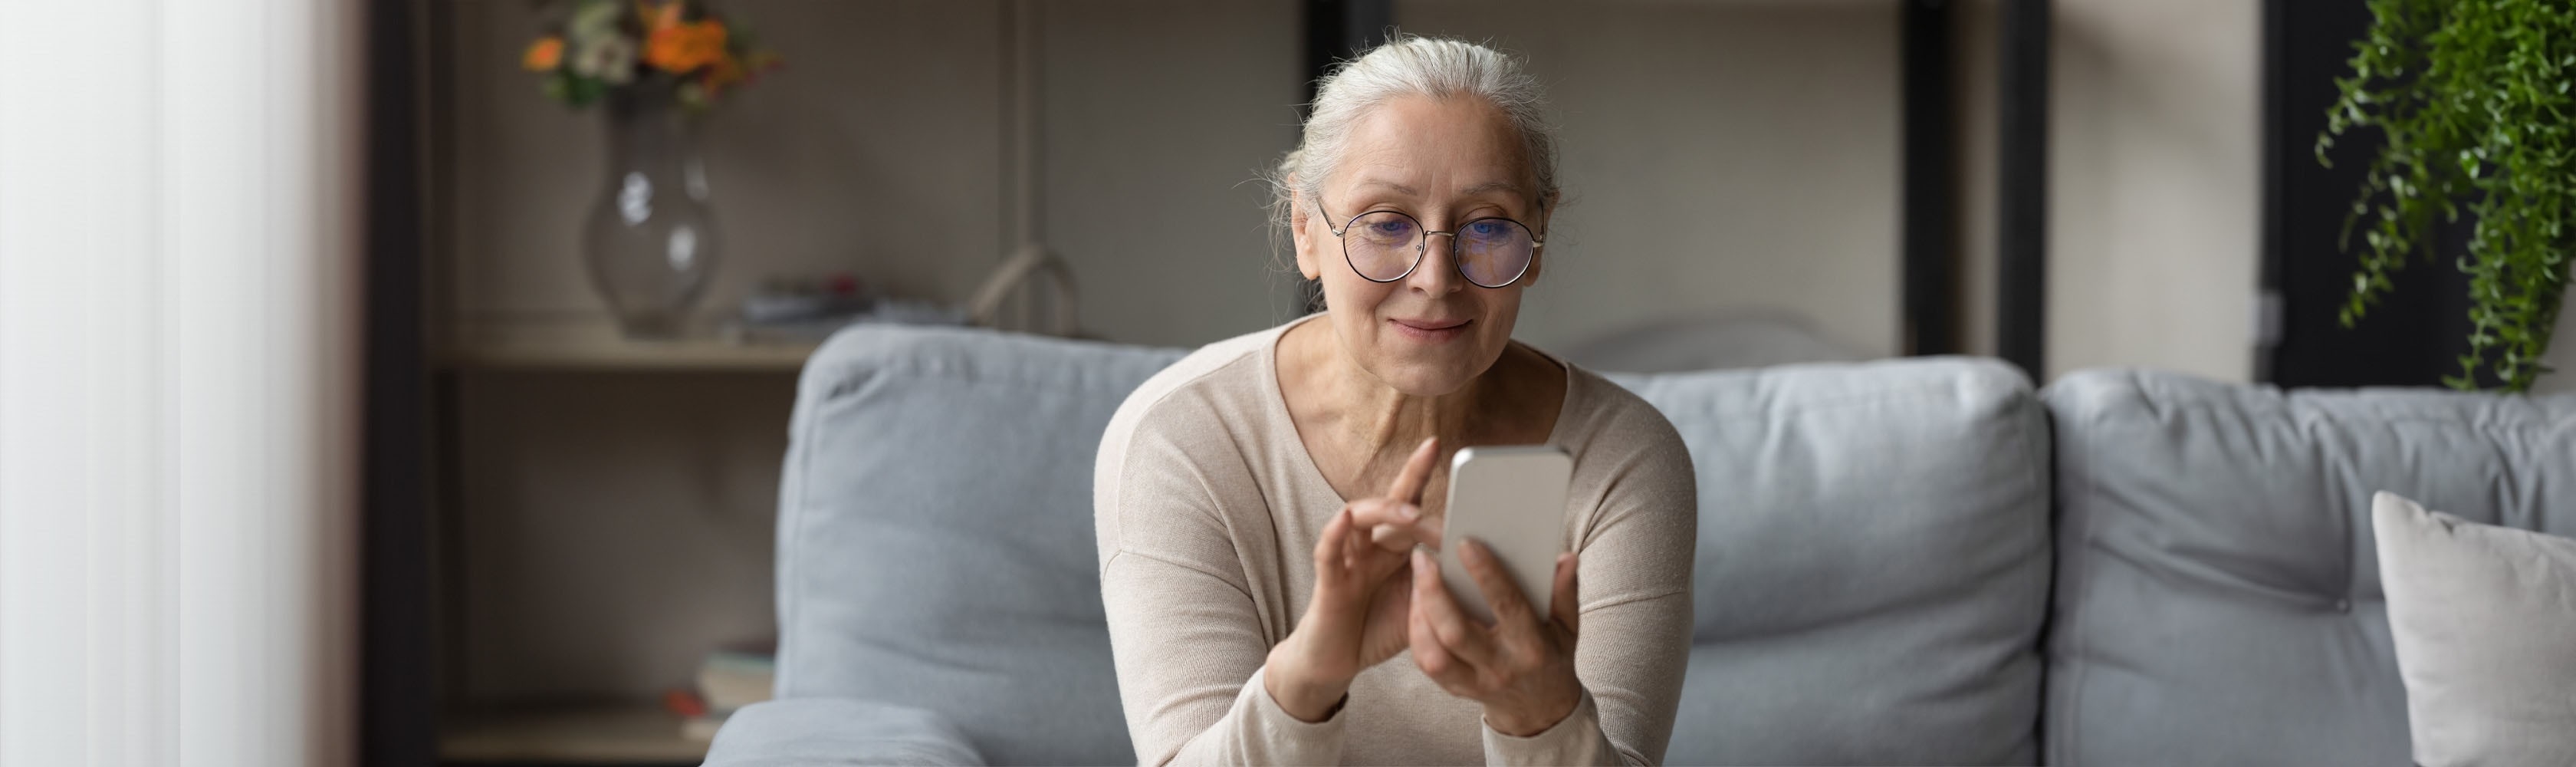 Ältere Frau benutzt auf dem Smartphone eine Prävetions-App.